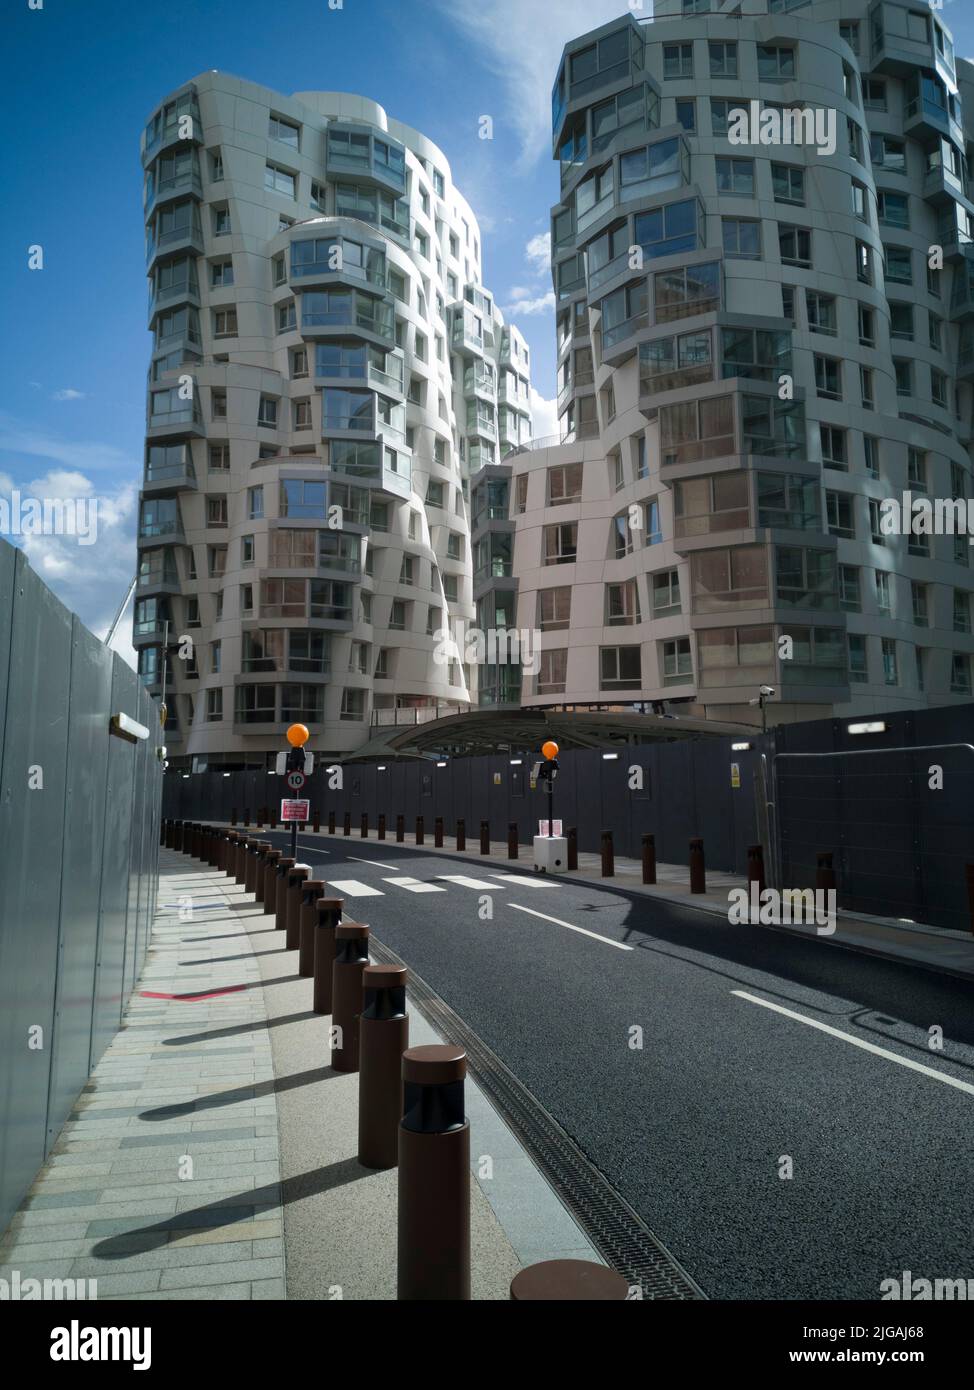 Alrededor de Battersea Power Station, Londres, Reino Unido, 2021 de octubre. Carretera que conduce al nuevo bloque de apartamentos diseñado por Frank Gehry, cerca de la estación de energía Battersea, Londres, SW8, Inglaterra. Foto de stock